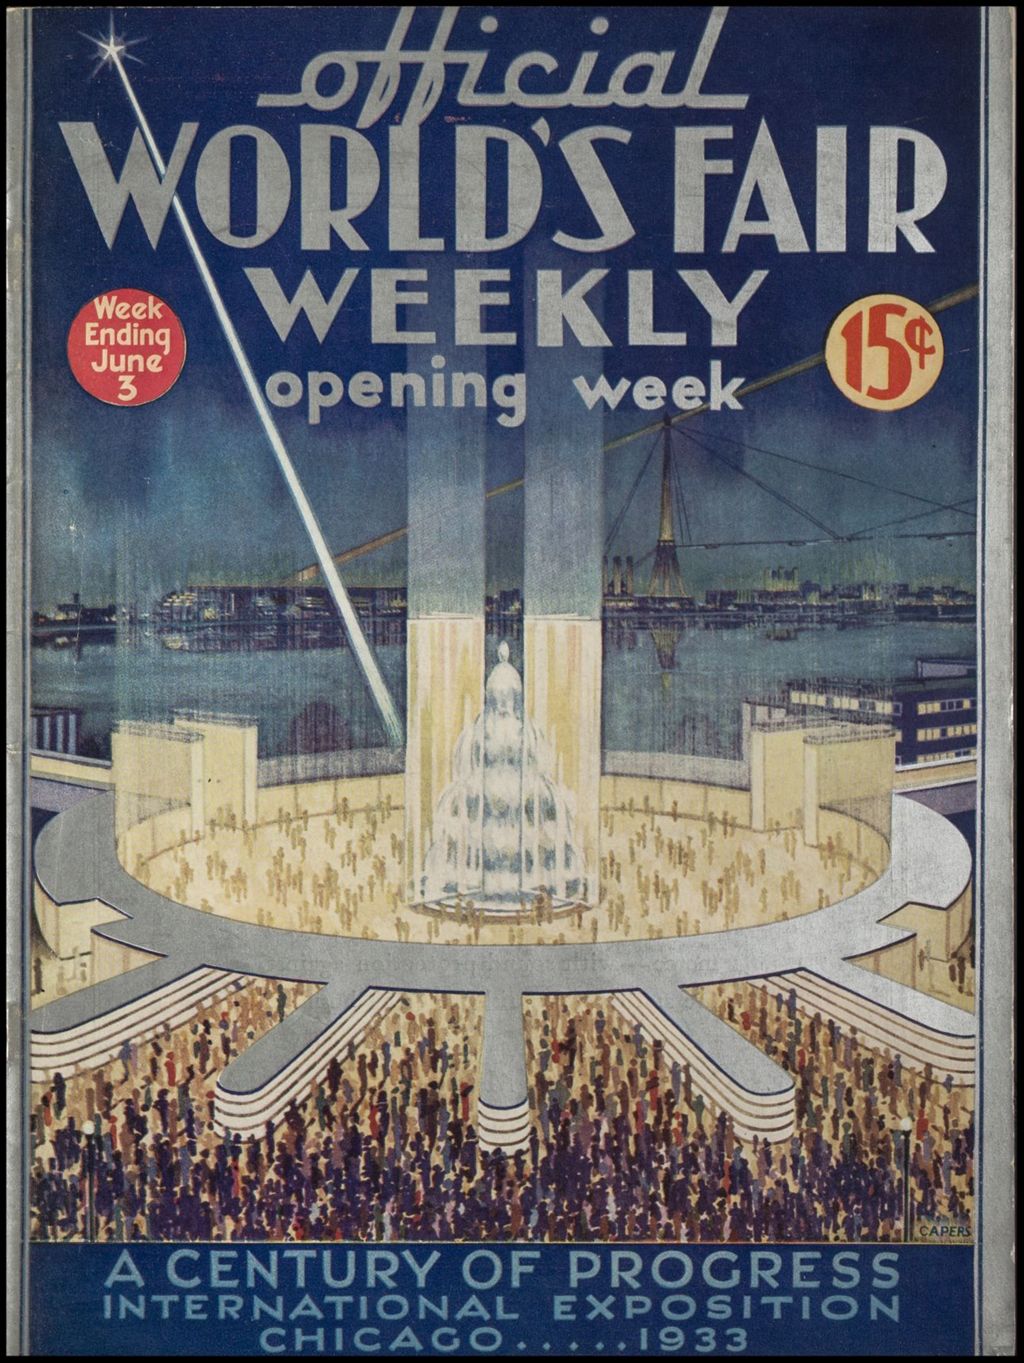 Miniature of World's Fair Weekly, Week Ending June 3, 1933 (Opening Week)